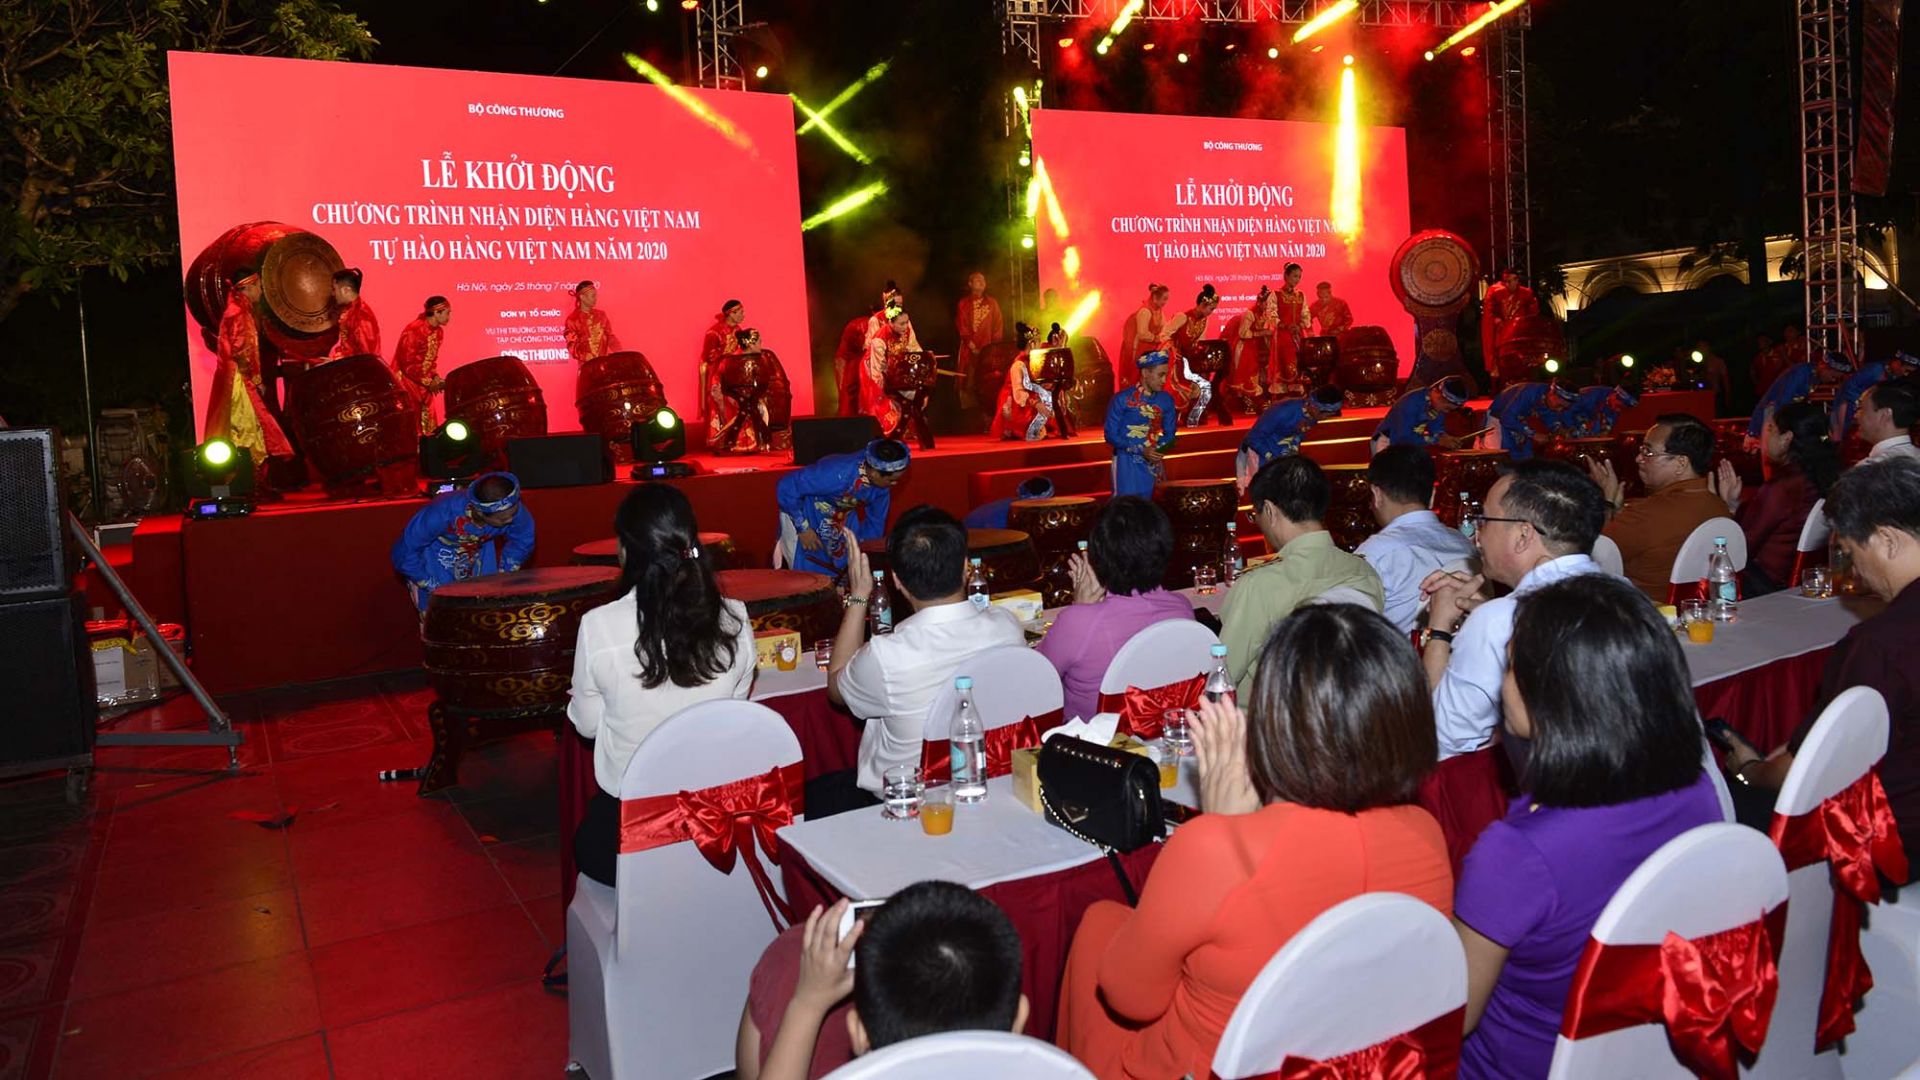 Chương trình Nhận diện hàng Việt Nam với tên “Tự hào hàng Việt Nam” năm 2020 